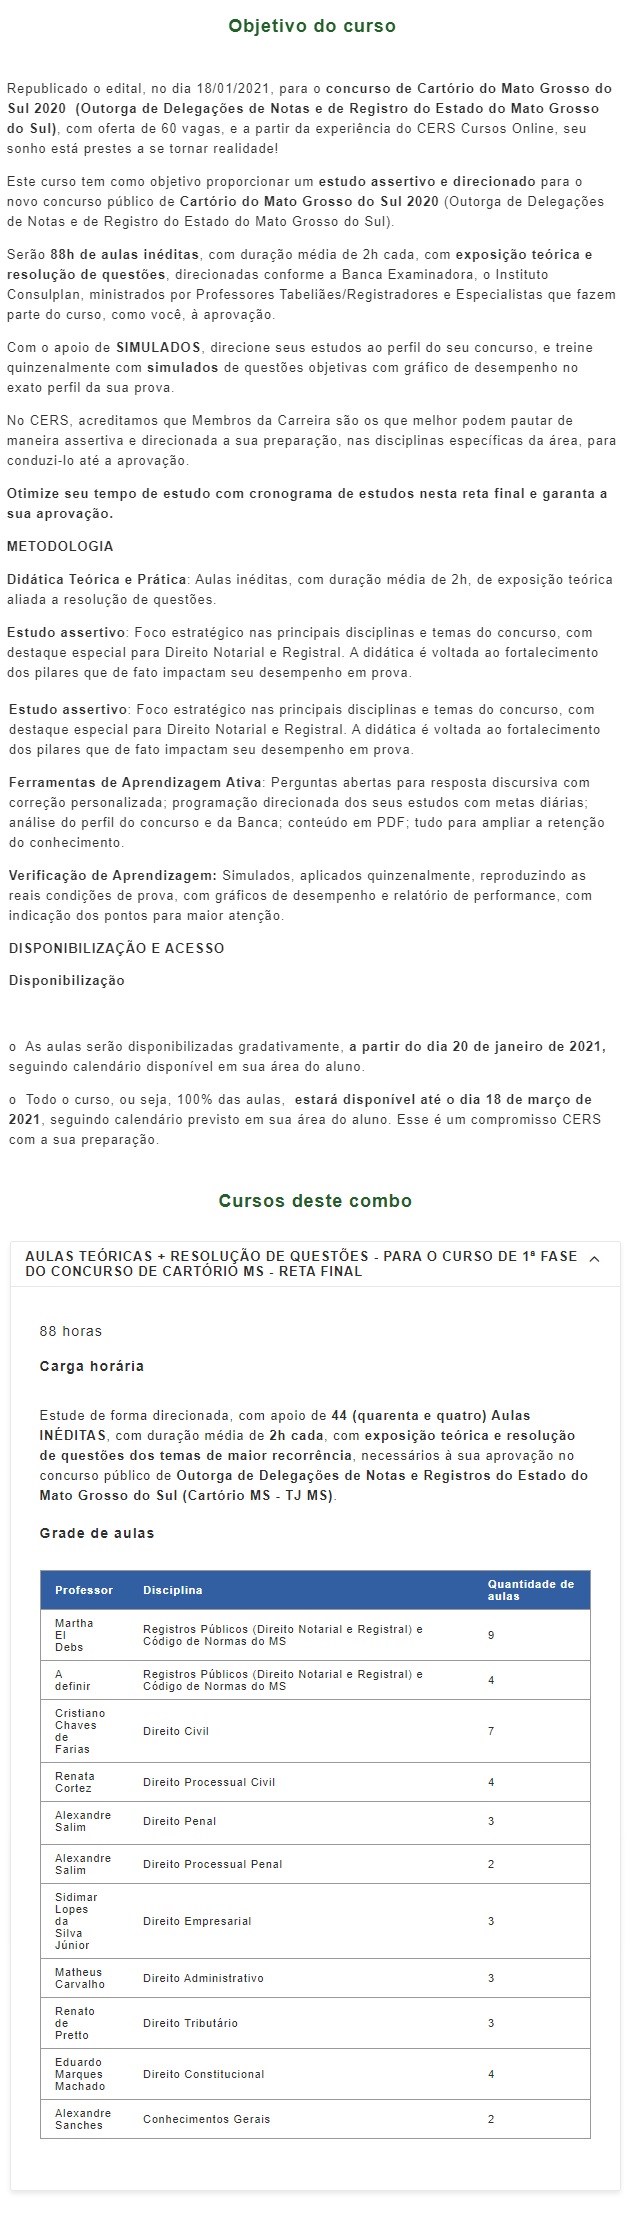 Cartórios MS Reta Final - PÓS EDITAL (CERS 2021) Outorga de Delegações de Notas e de Reistro do Estado do Mato Grosso do Sul 4